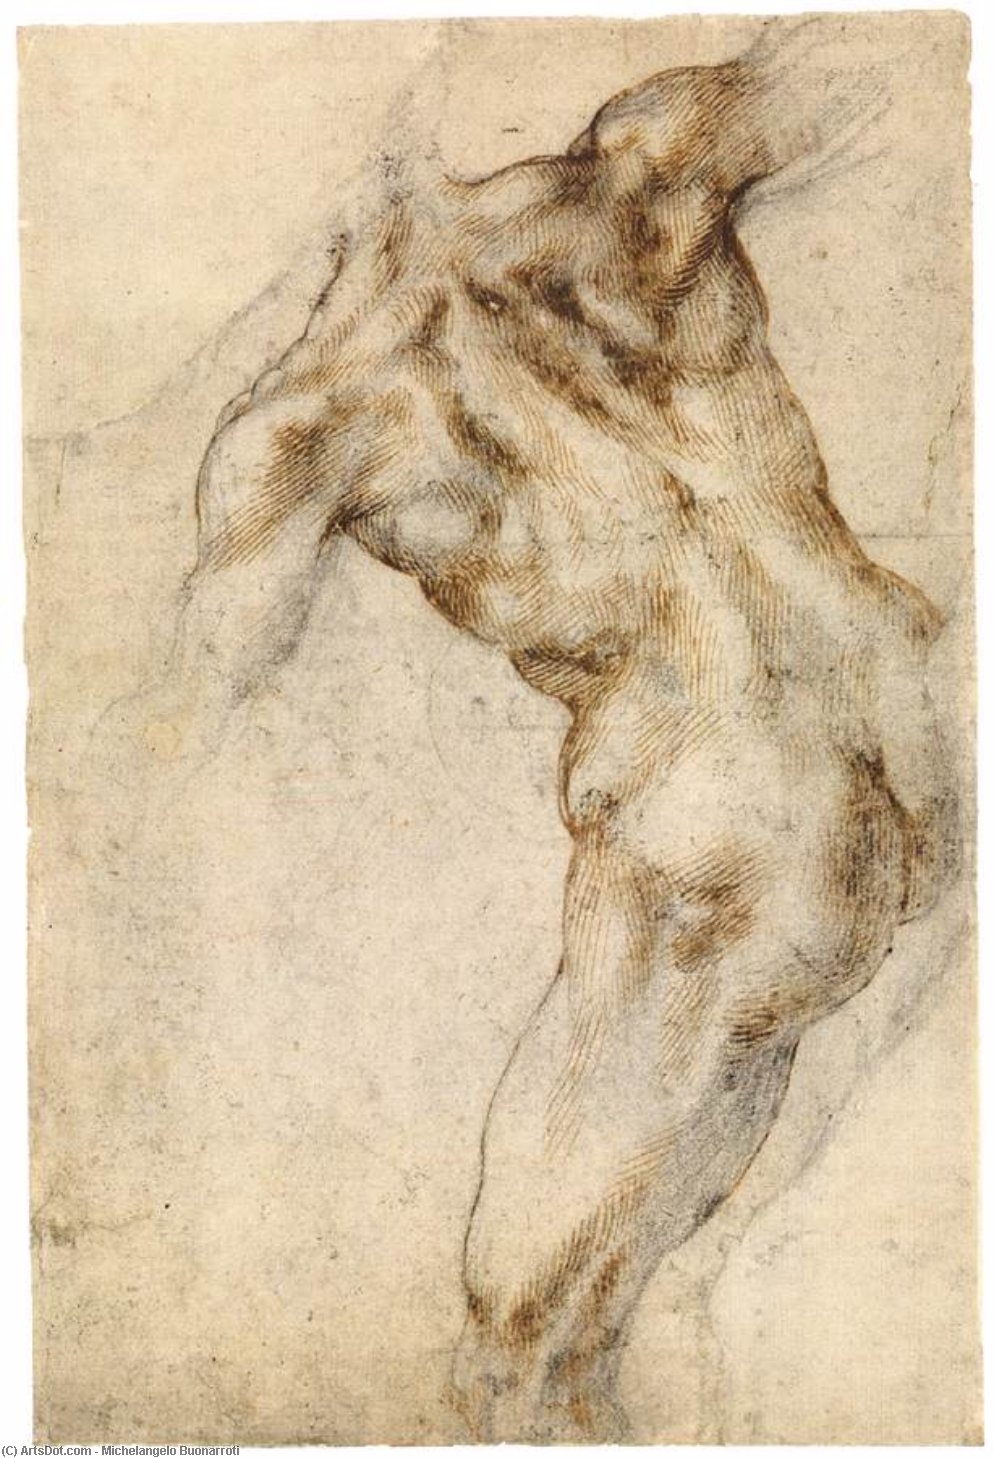 Comprar Reproducciones De Arte Del Museo Male Nude, Visto desde el Rear (recto), 1503 de Michelangelo Buonarroti (1475-1564, Italy) | ArtsDot.com